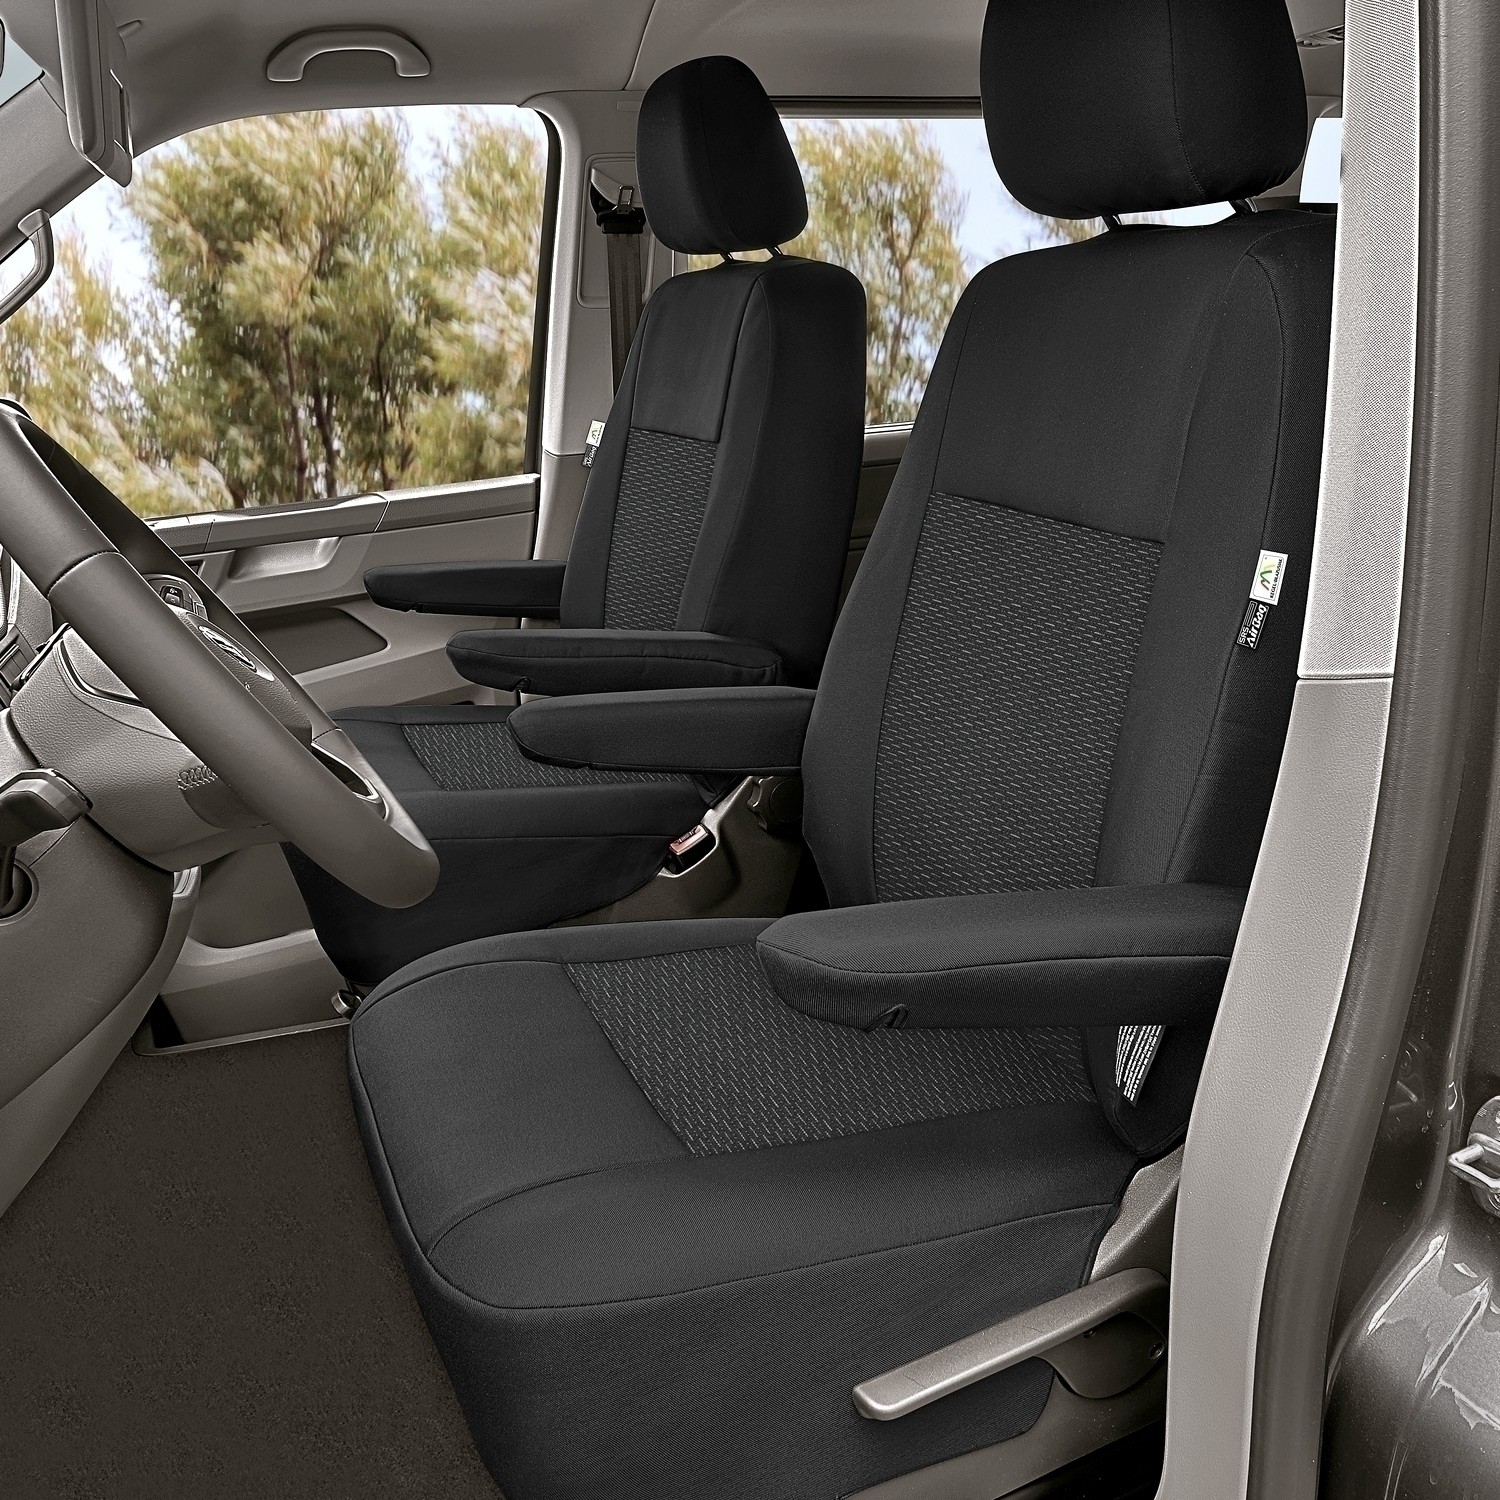 Sitzbezug-Set Front 1 + 1 für VW T5 & VW T6 - 100 % Passform, für